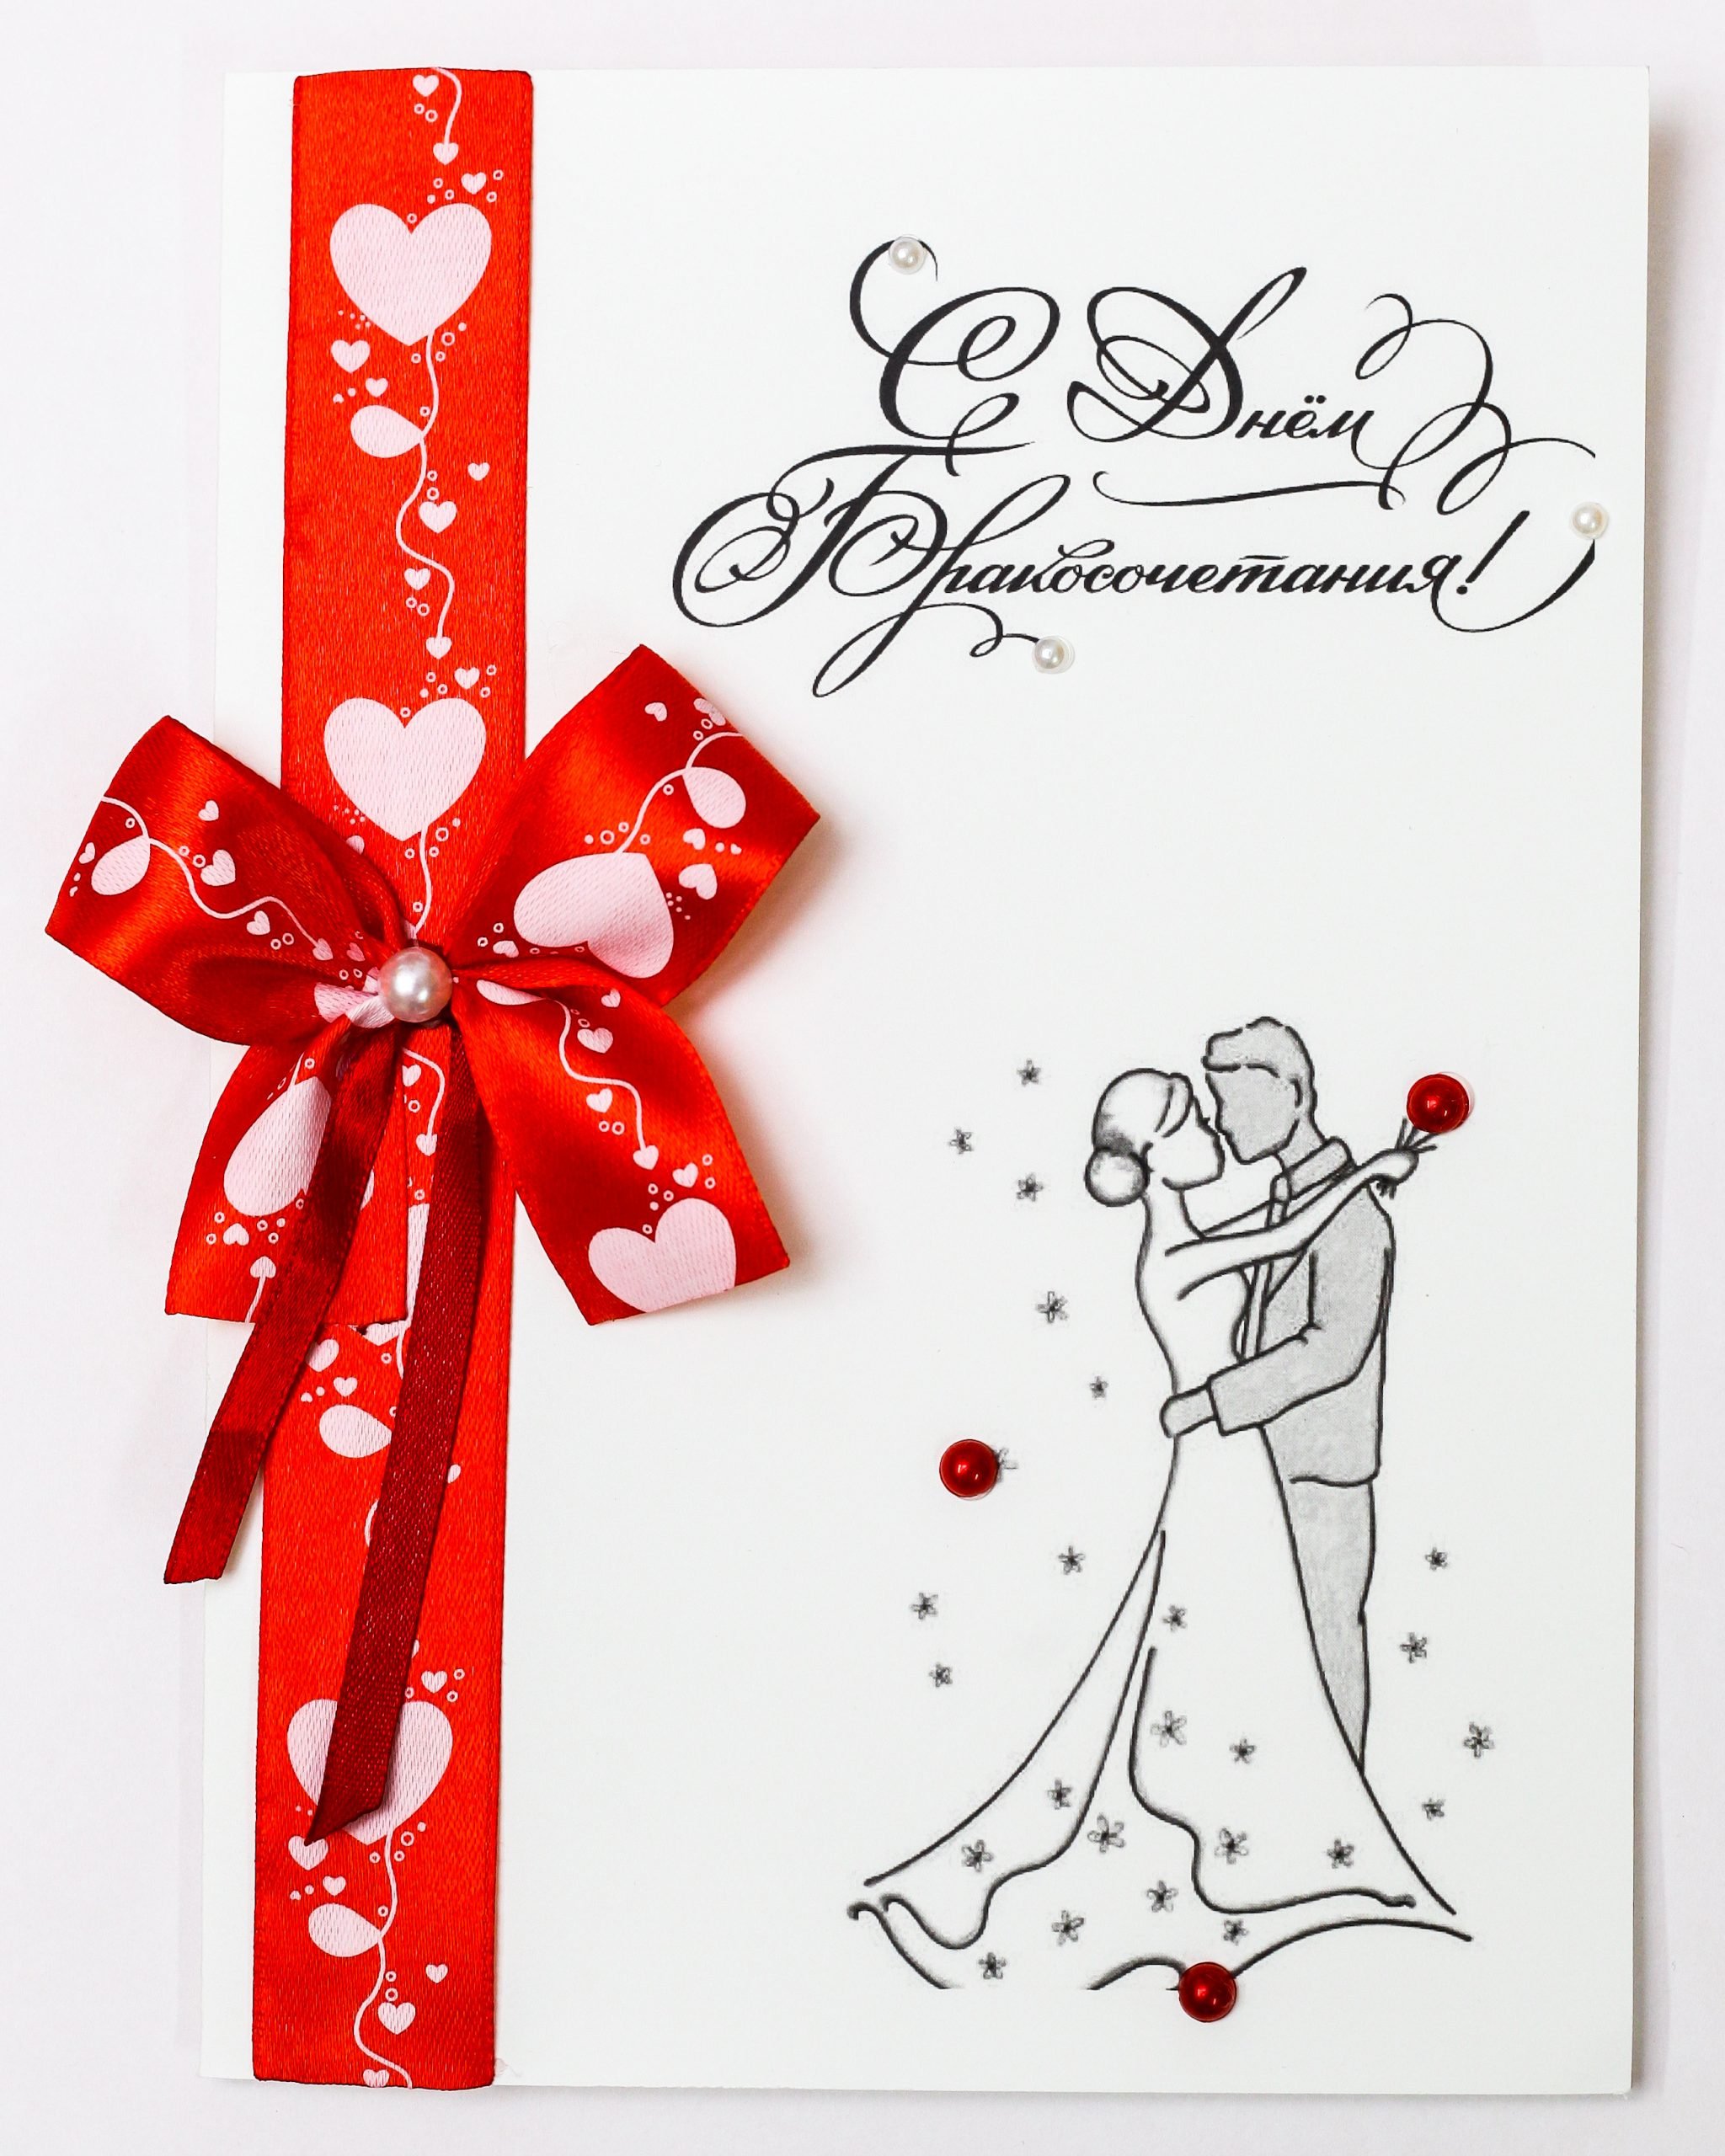 Картинки для открытки с годовщиной свадьбы